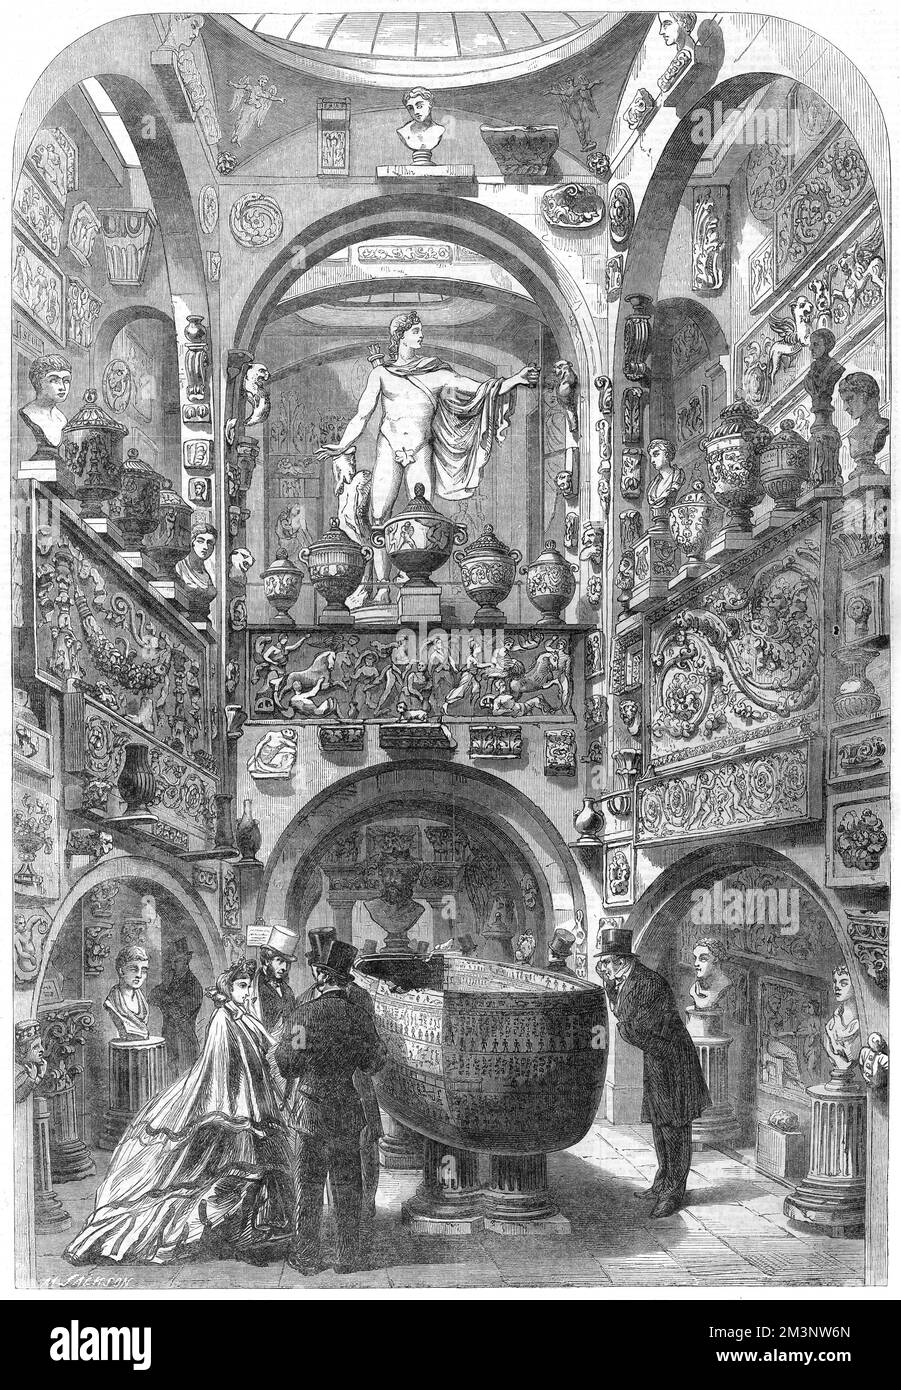 Sir John Soanes Museum im Lincoln Inn Fields, 1864. Viktorianische Besucher bewundern den Sarkophag von Seti I, während ein Apollo Belvedere mit Feigenblatt von oben blickt. Datum: 1864 Stockfoto